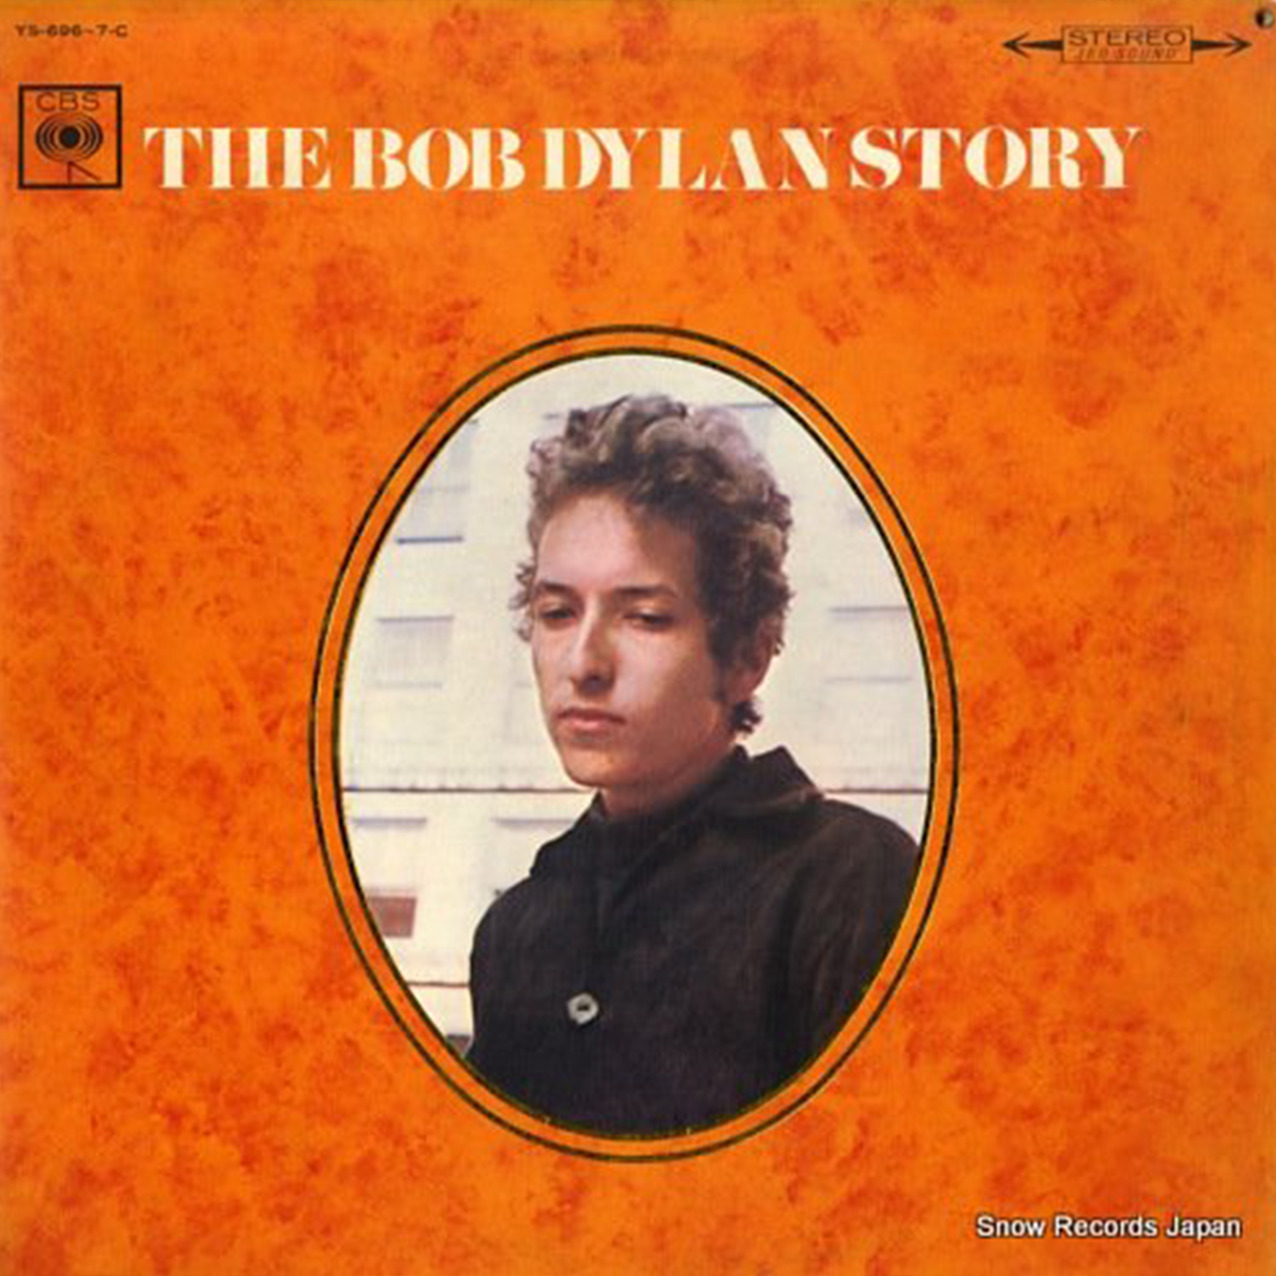 レコード買取専門店「TU-Field」では、ボブ・ディラン『ボブ・ディラン・ストーリー』のレコードを高価買取しております